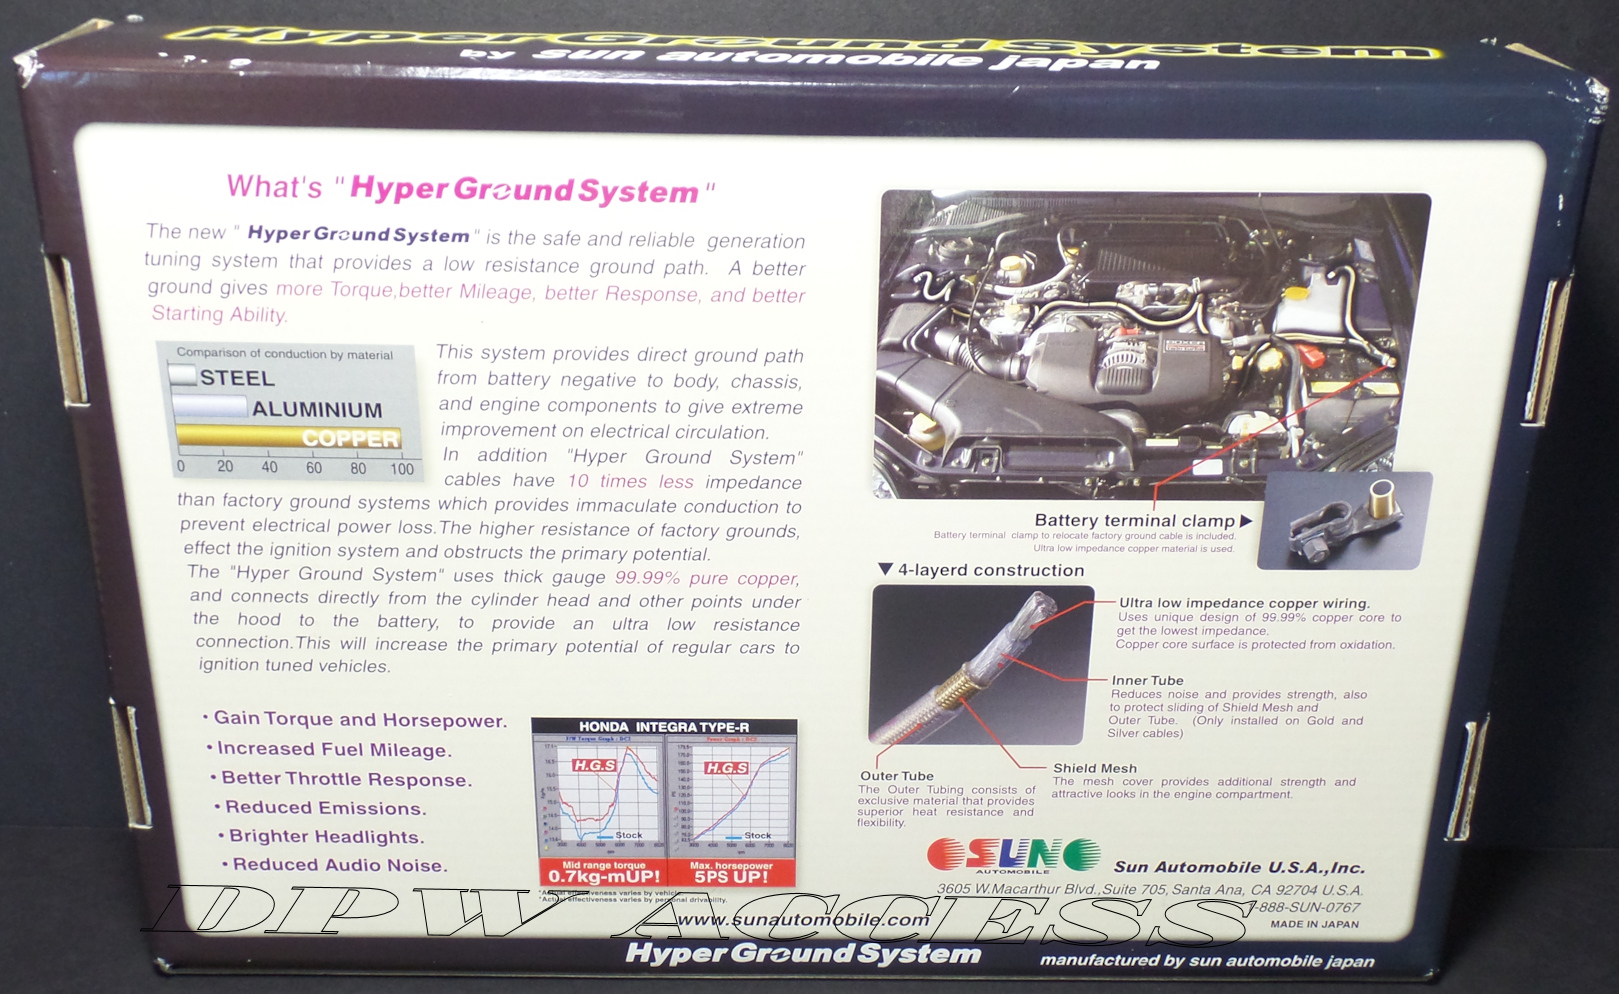 Sun Auto Hyper Ground Kit